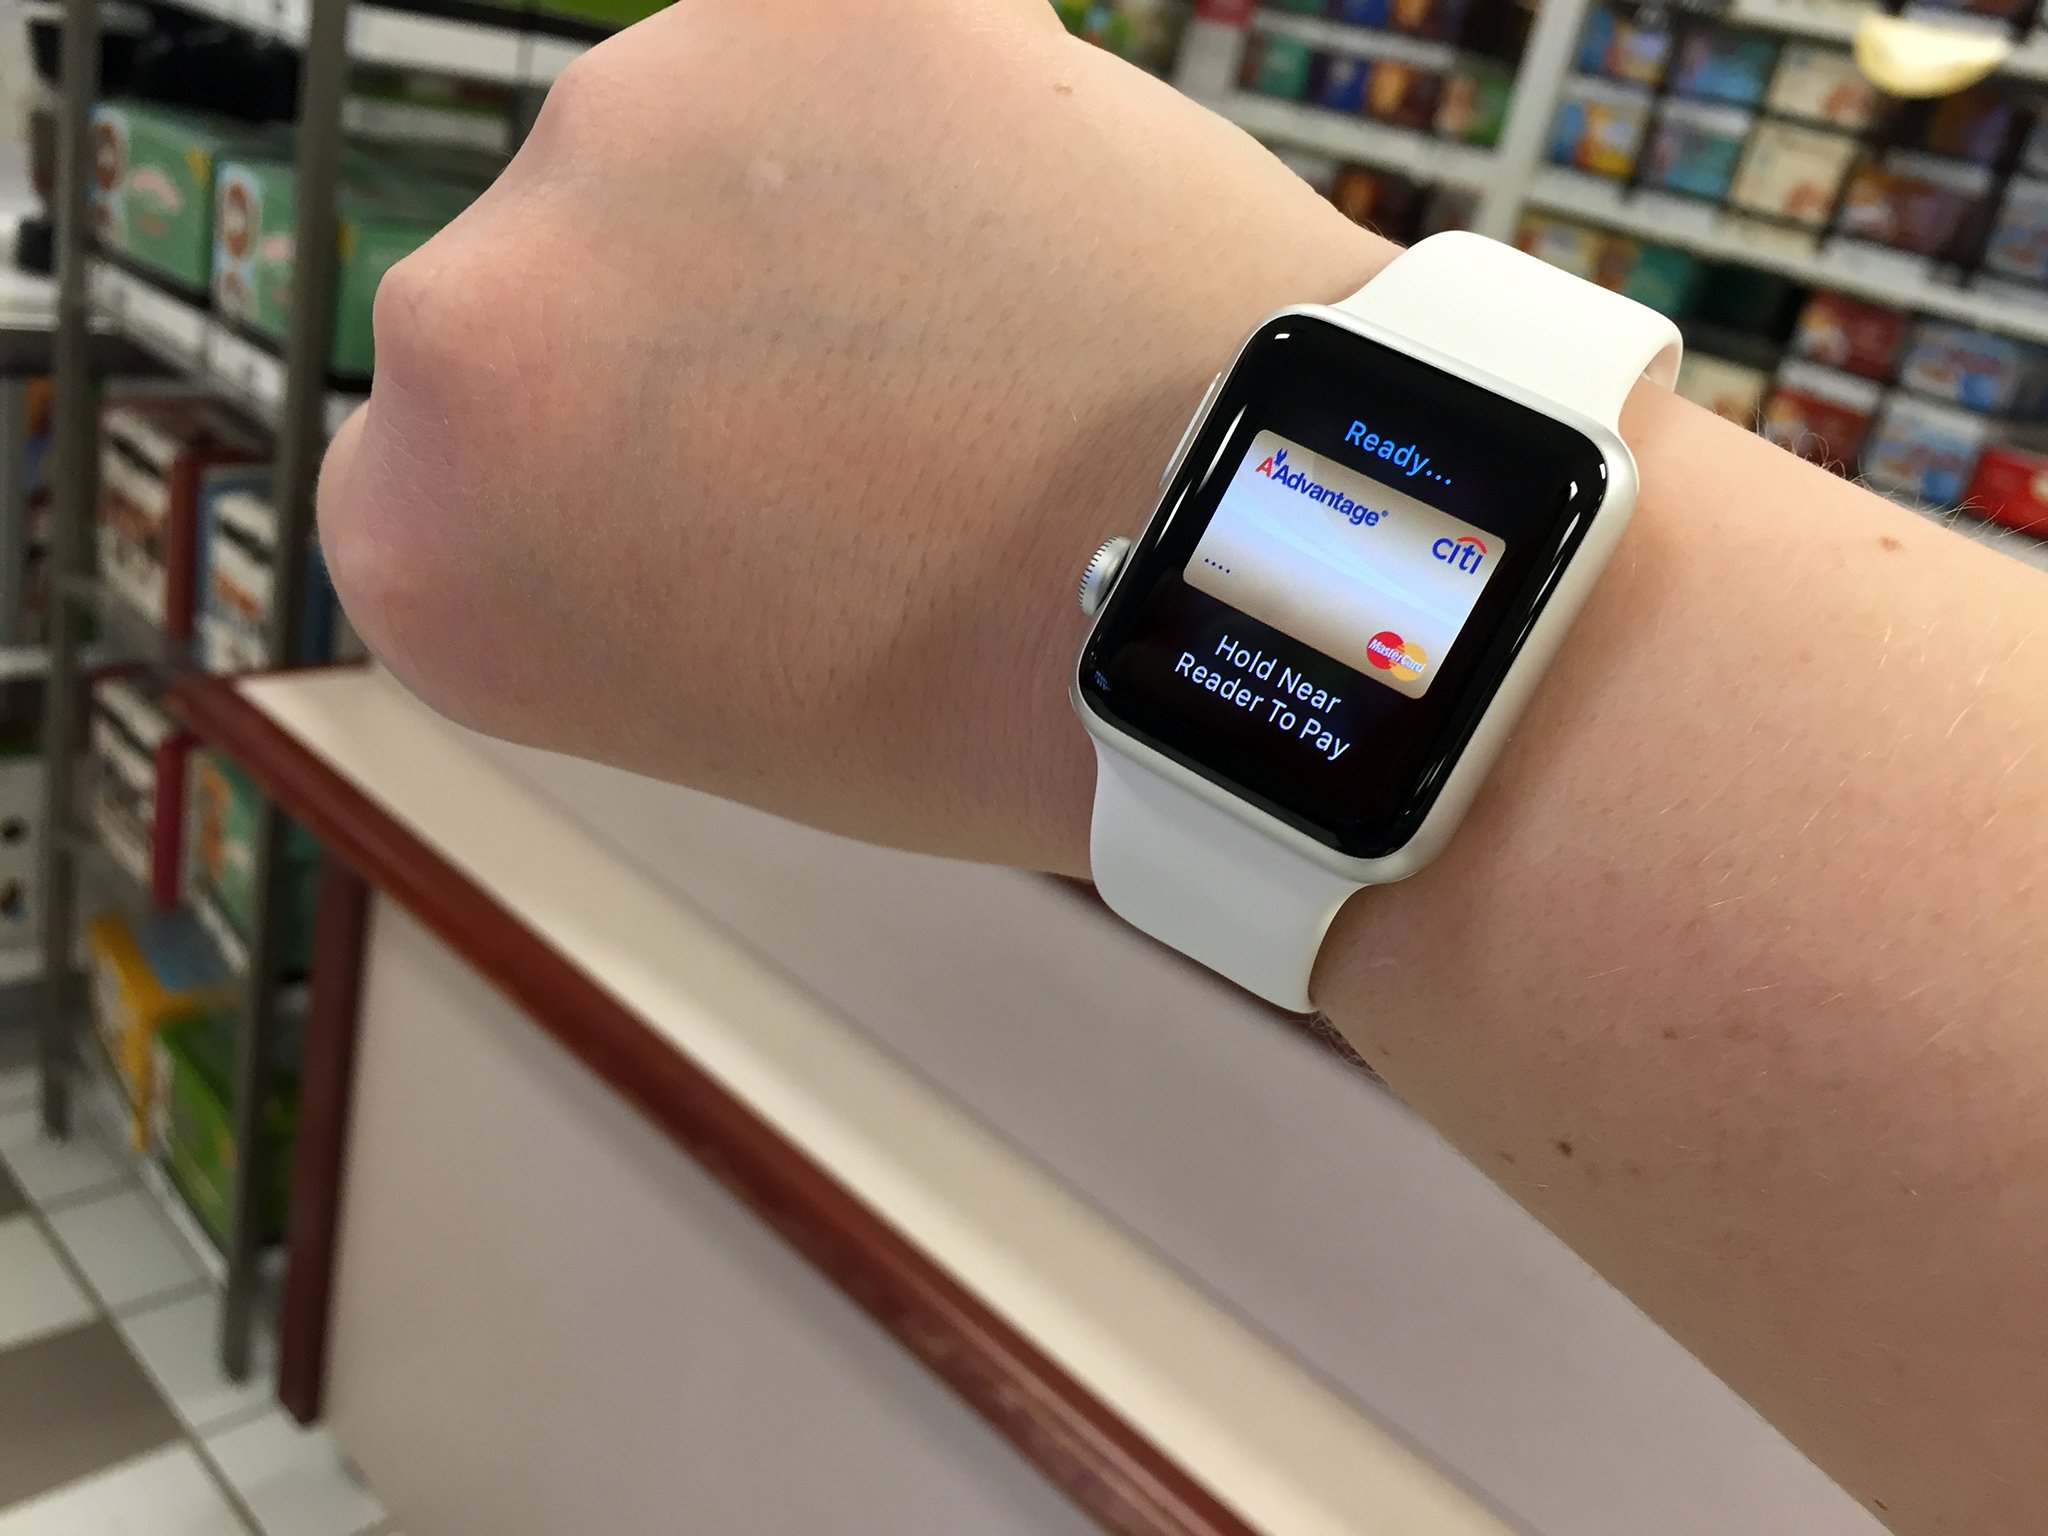 Часы оплачивать покупки. Apple watch. Apple pay ну часы которые. Мужчина с Эппл вотч на руках. Аппле Пэй часами фото.